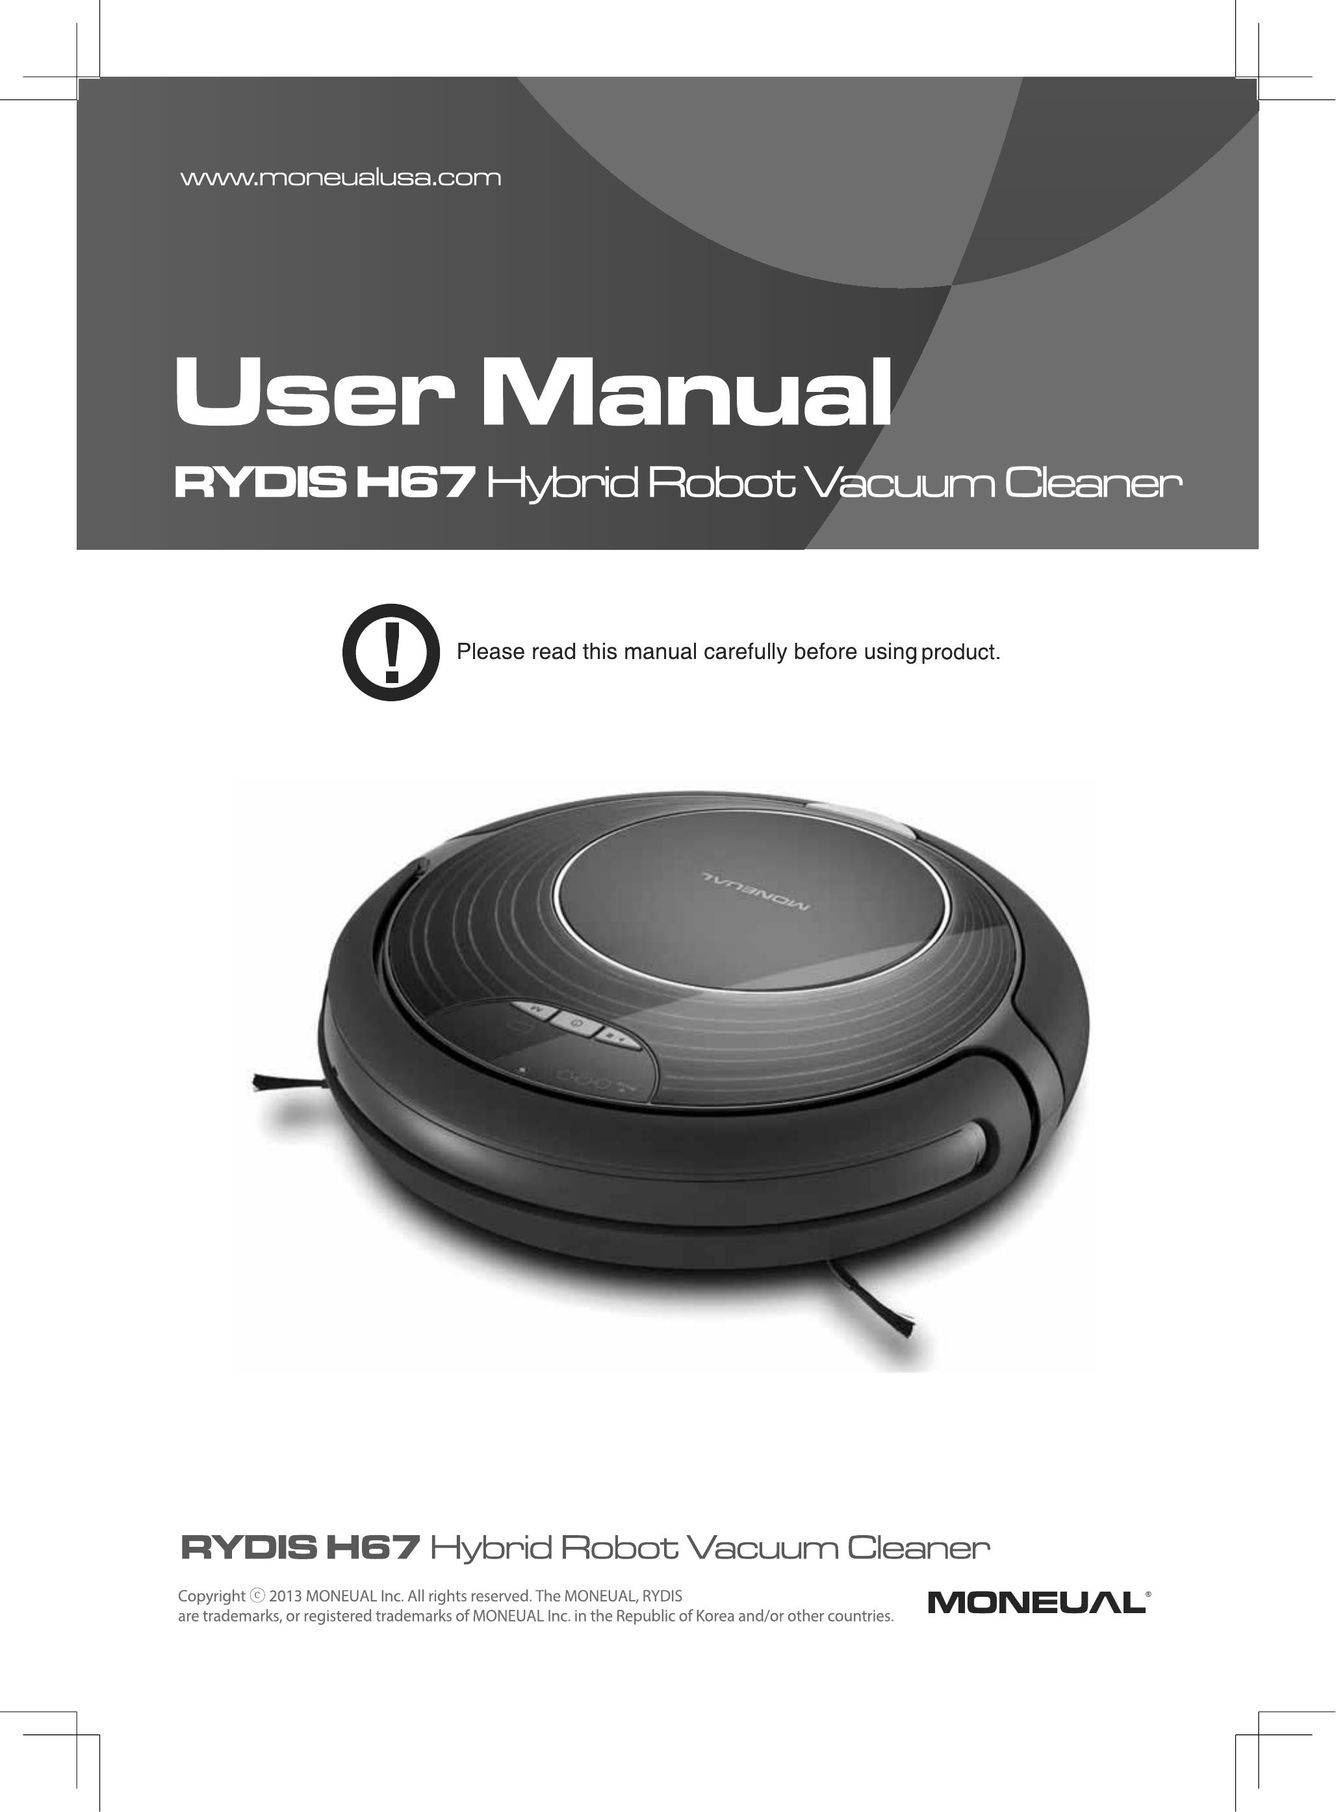 Moneual Lab rydis h67 Vacuum Cleaner User Manual